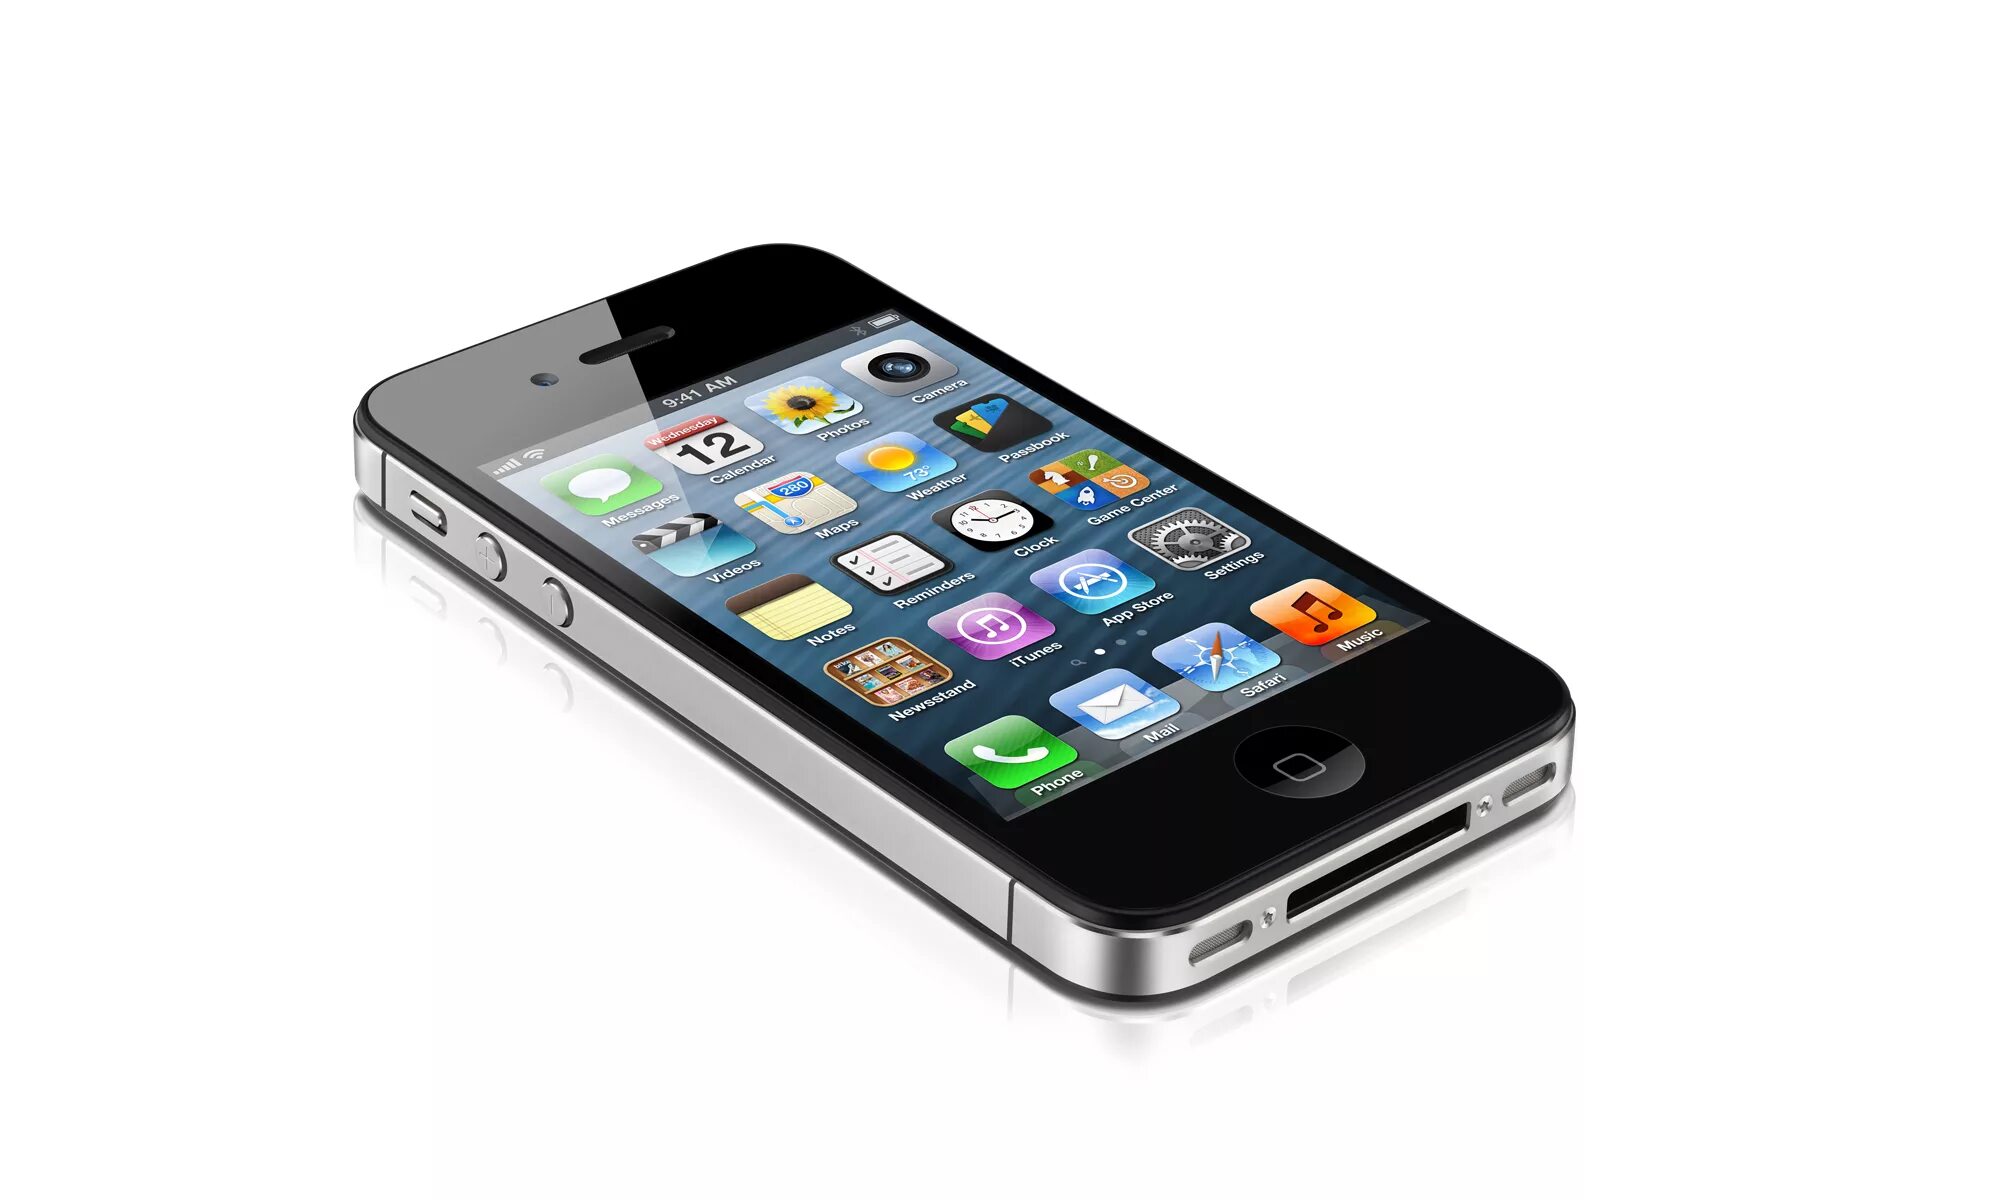 4 8gb. Iphone 4s. Iphone 4s (2011). Iphone 4. Apple iphone 4s 8gb Black.